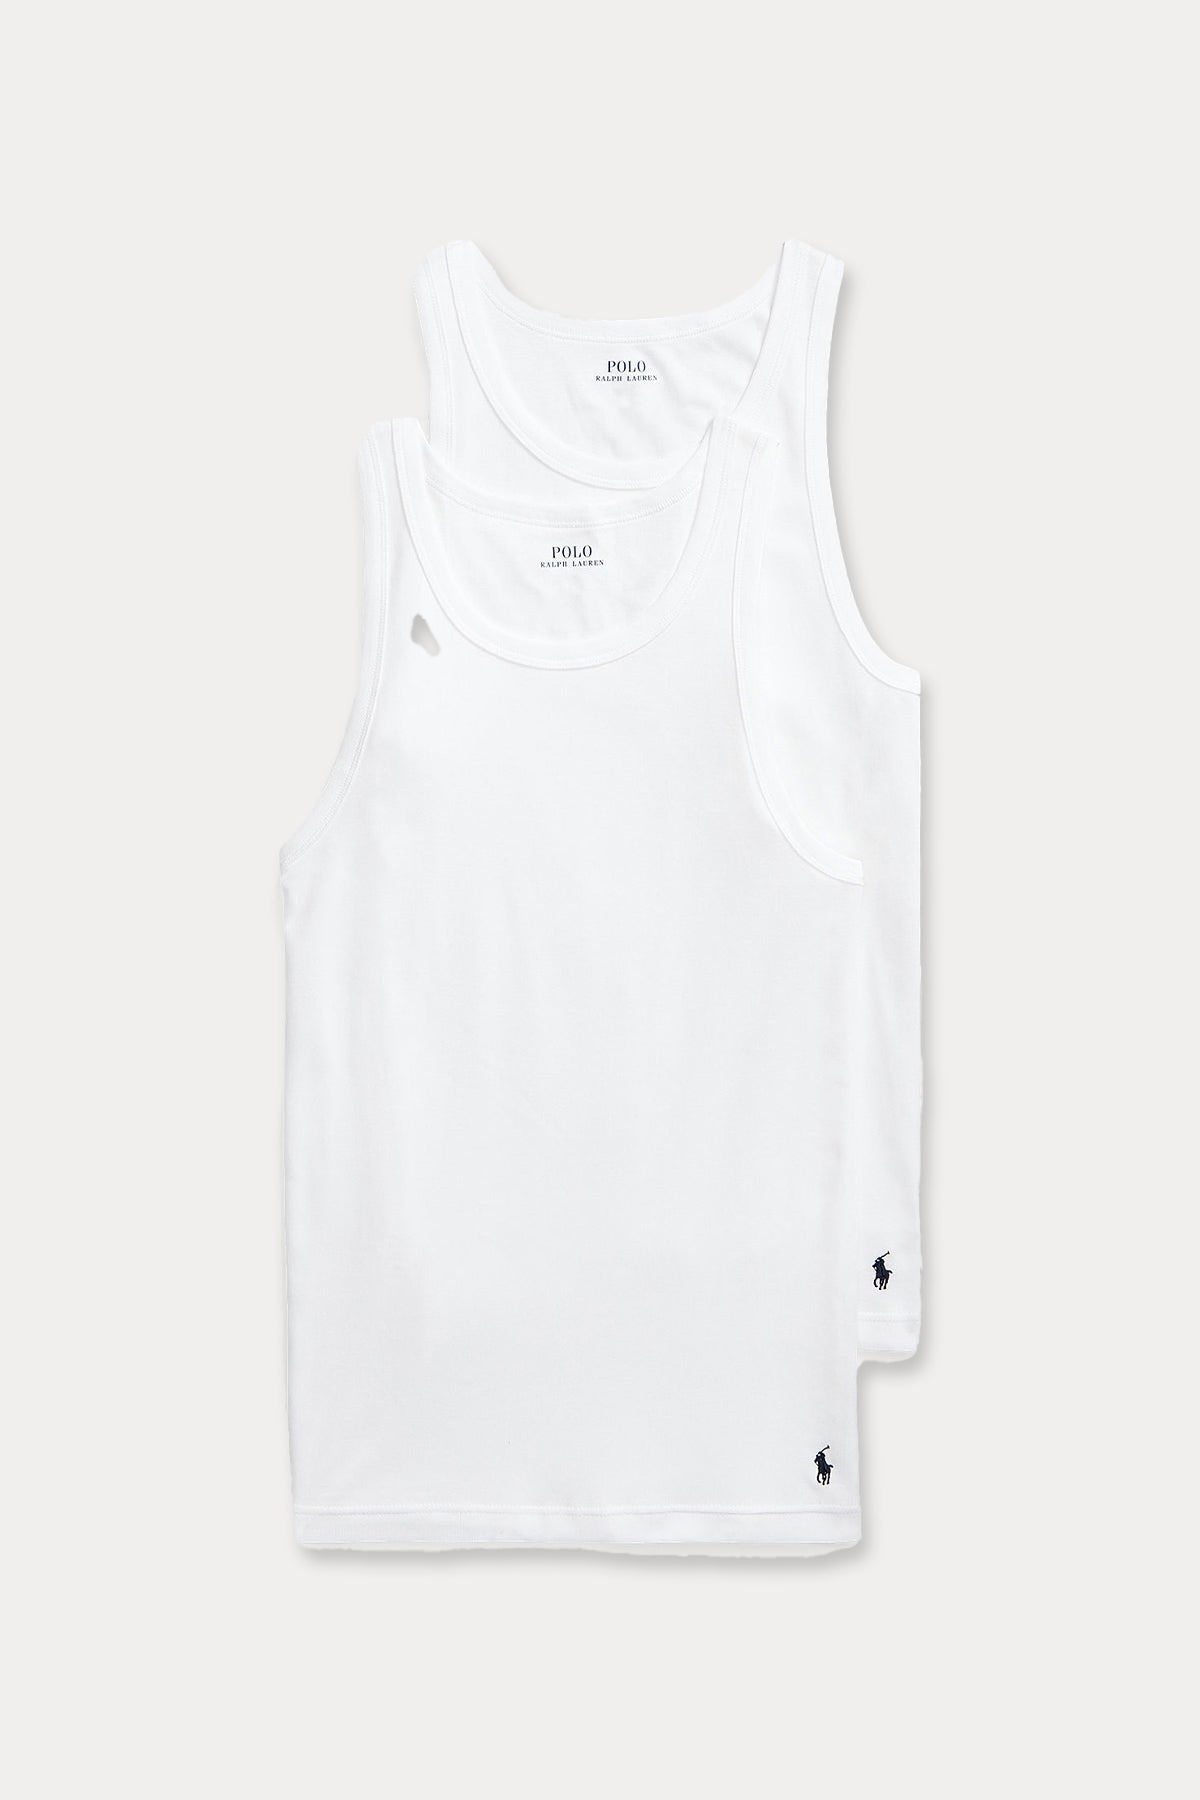 Polo Ralph Lauren 2'li Paket Kolsuz T-shirt